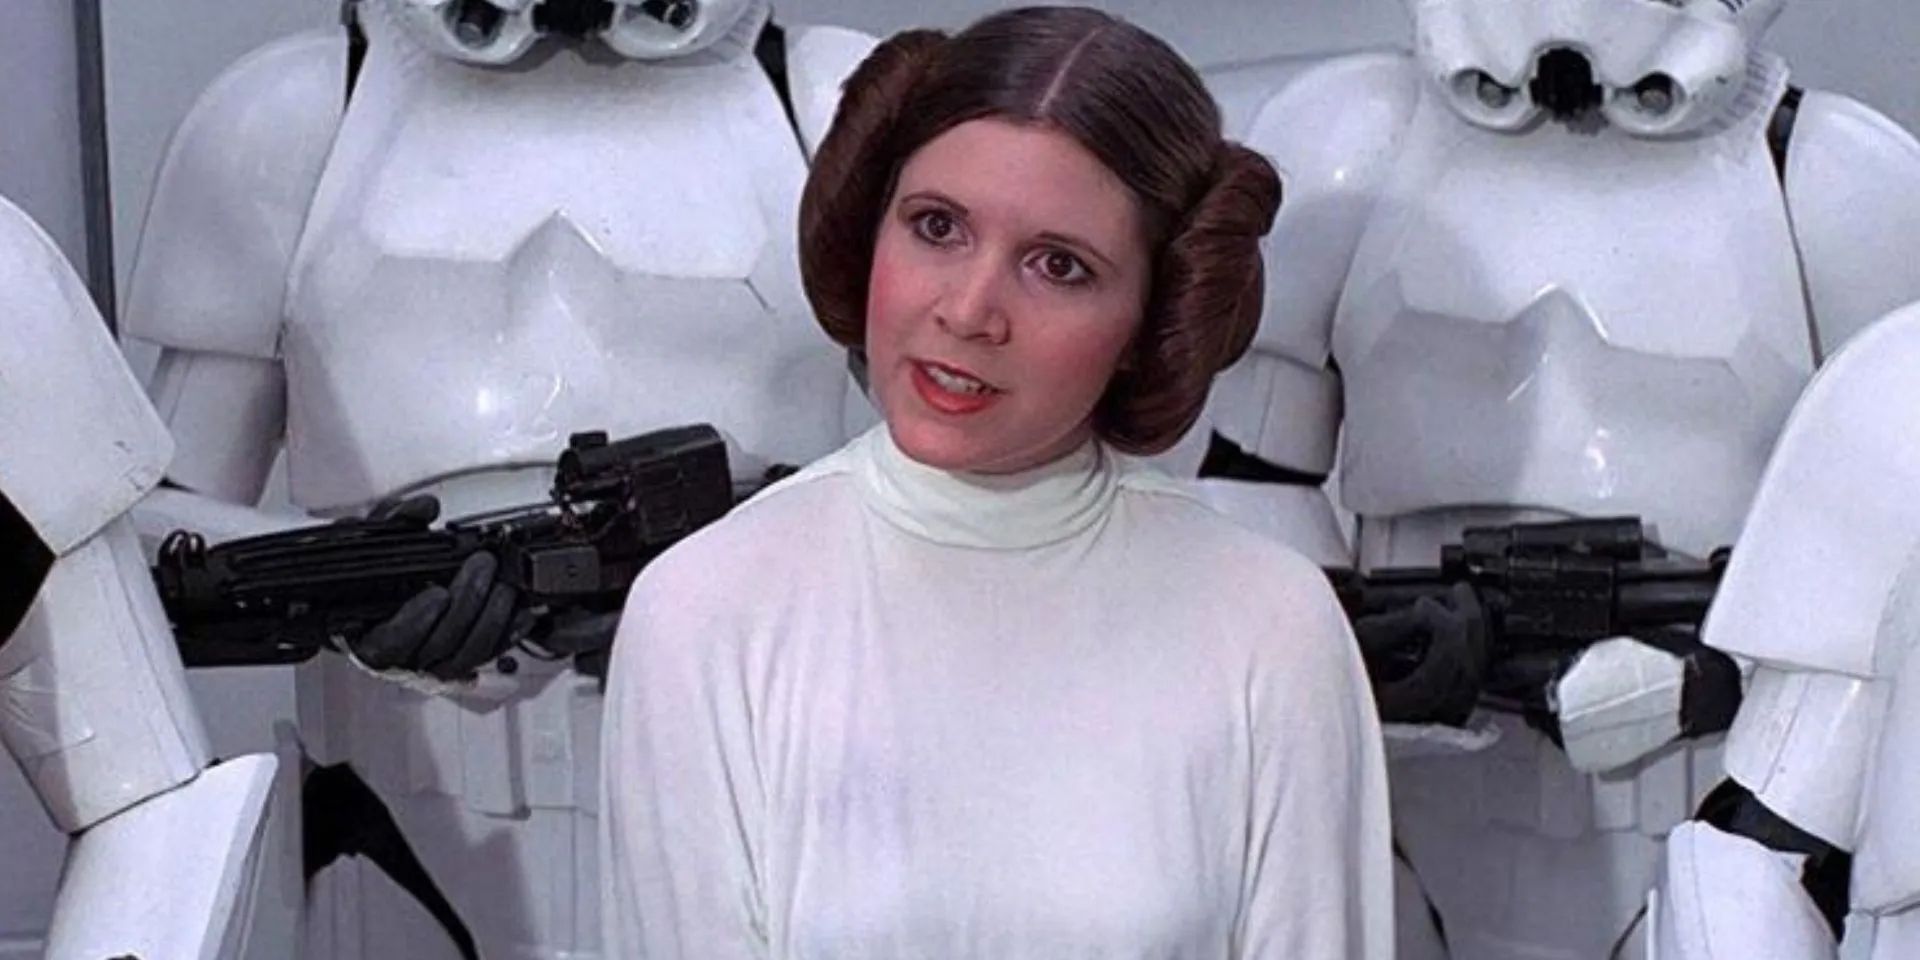 Este cosplay de la princesa Leia es un homenaje absolutamente hermoso a Carrie Fisher